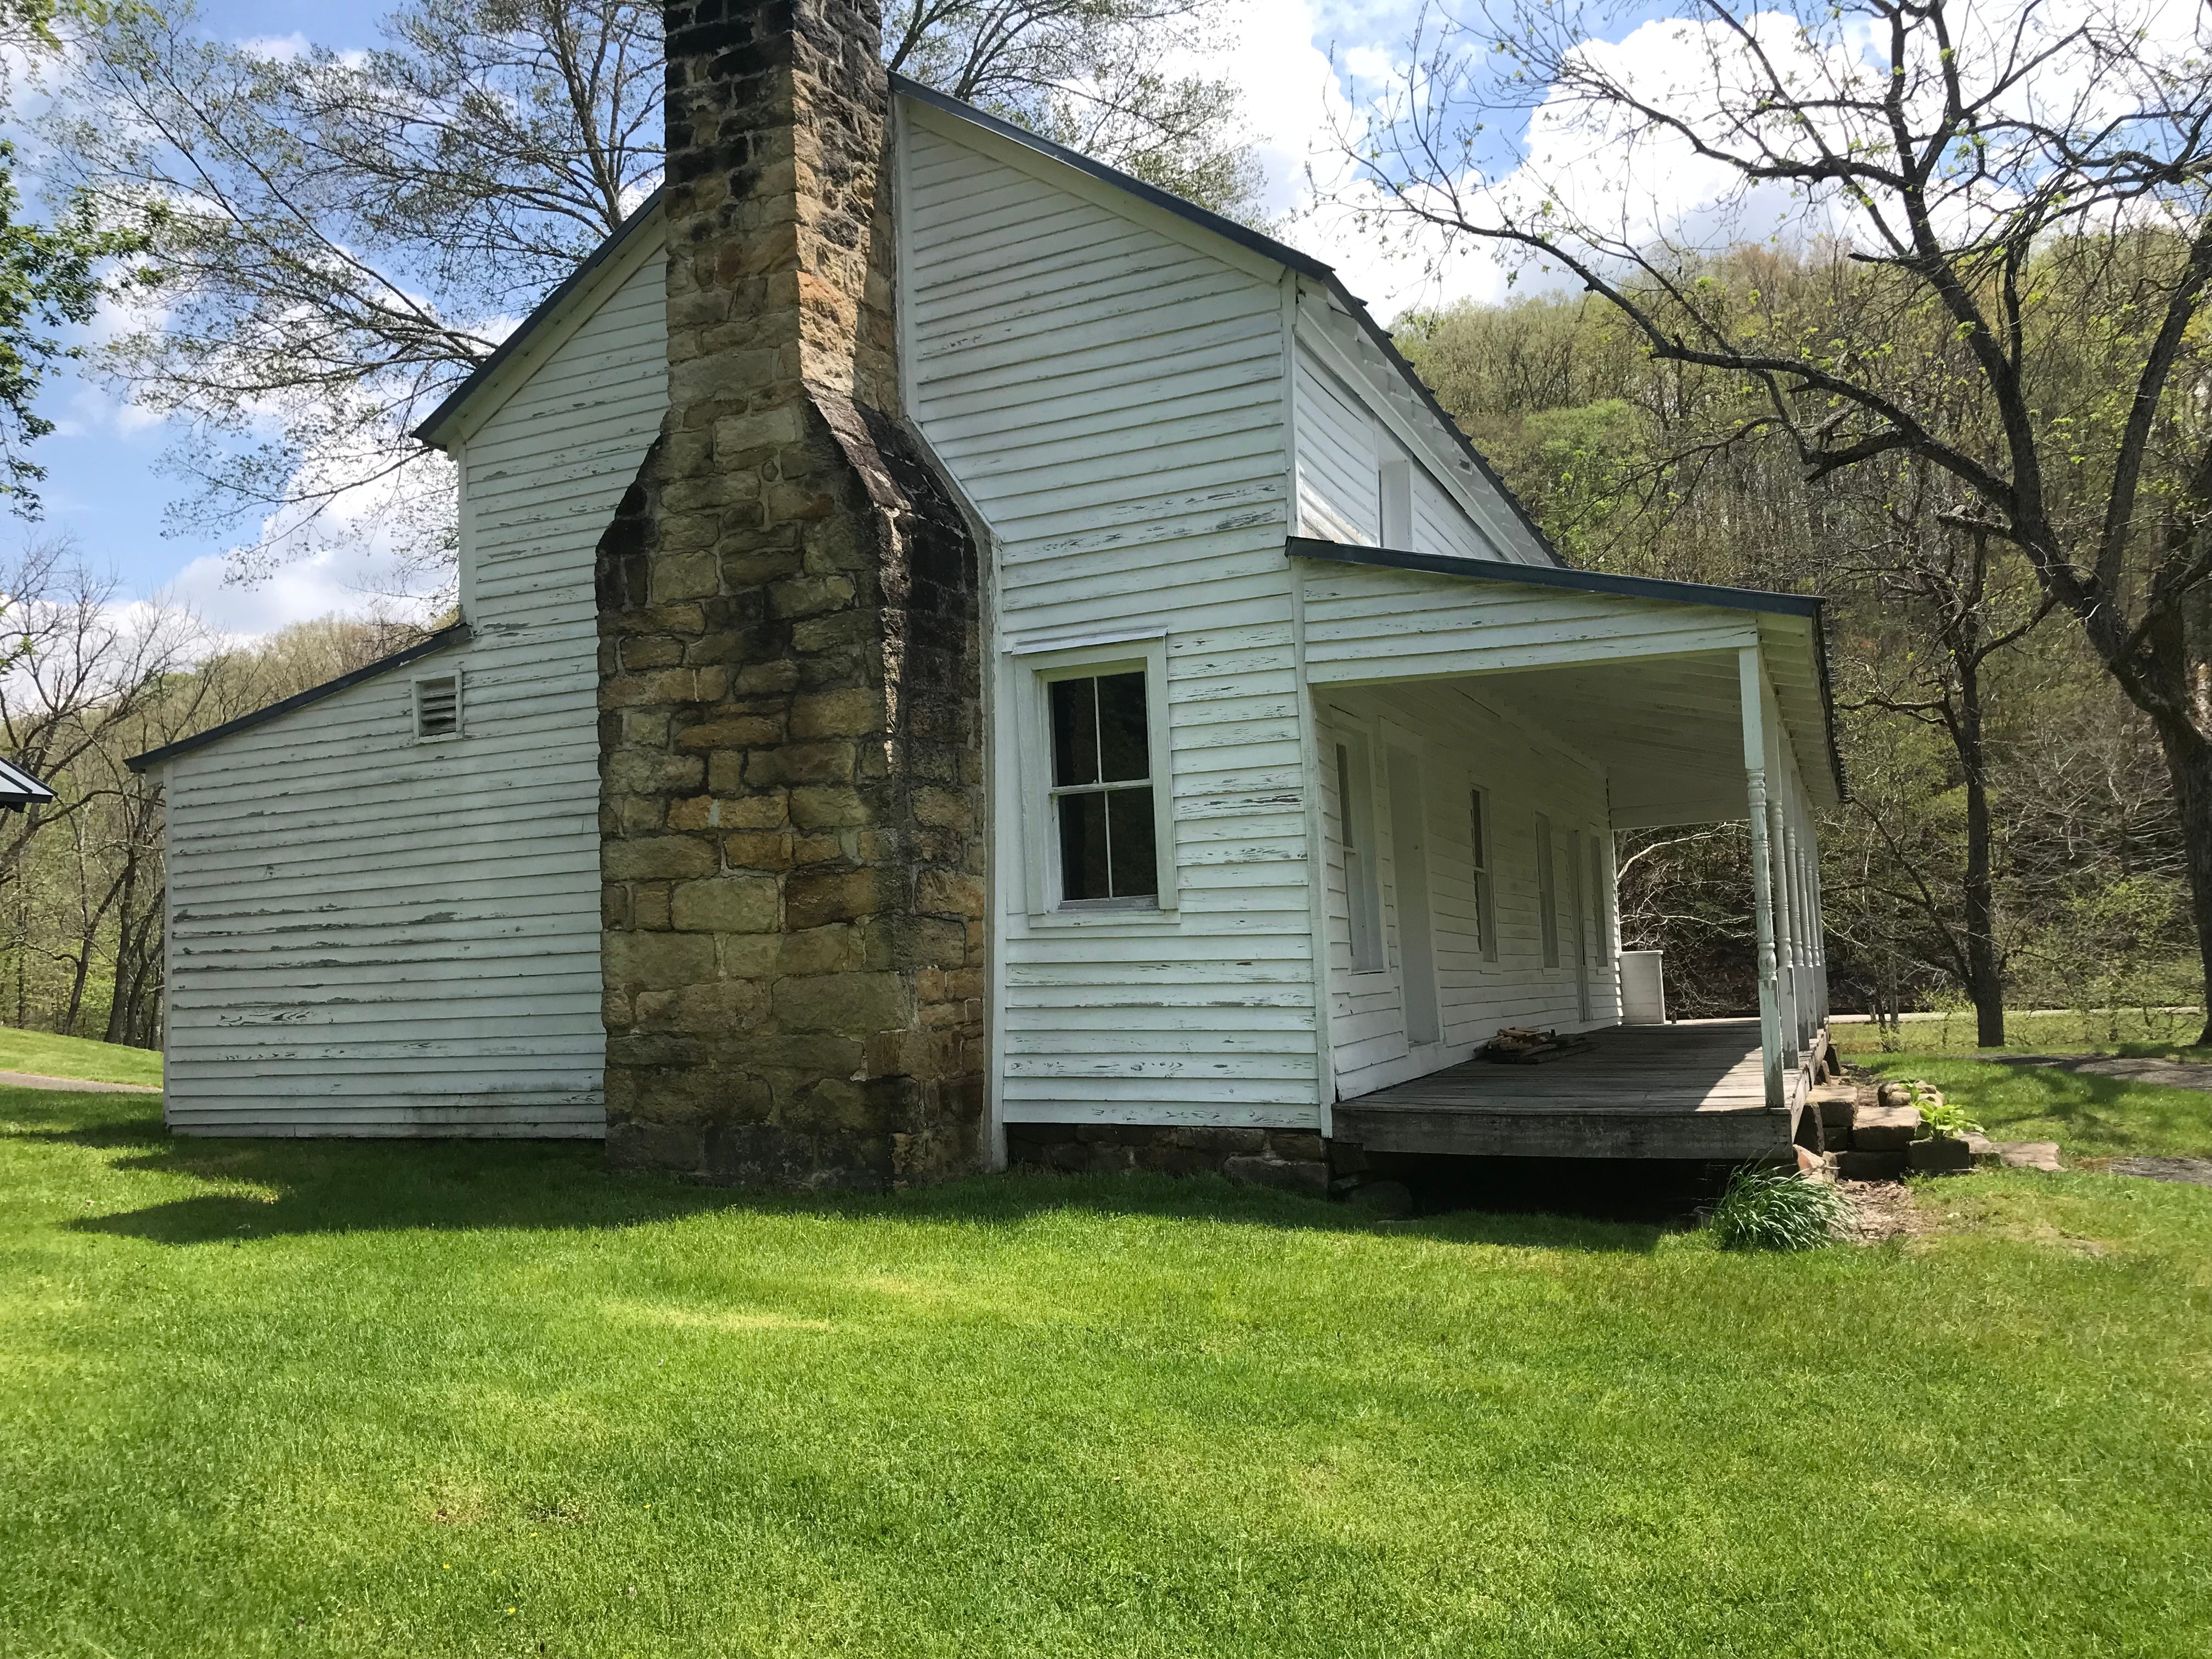 Civil war era home and farm buildings